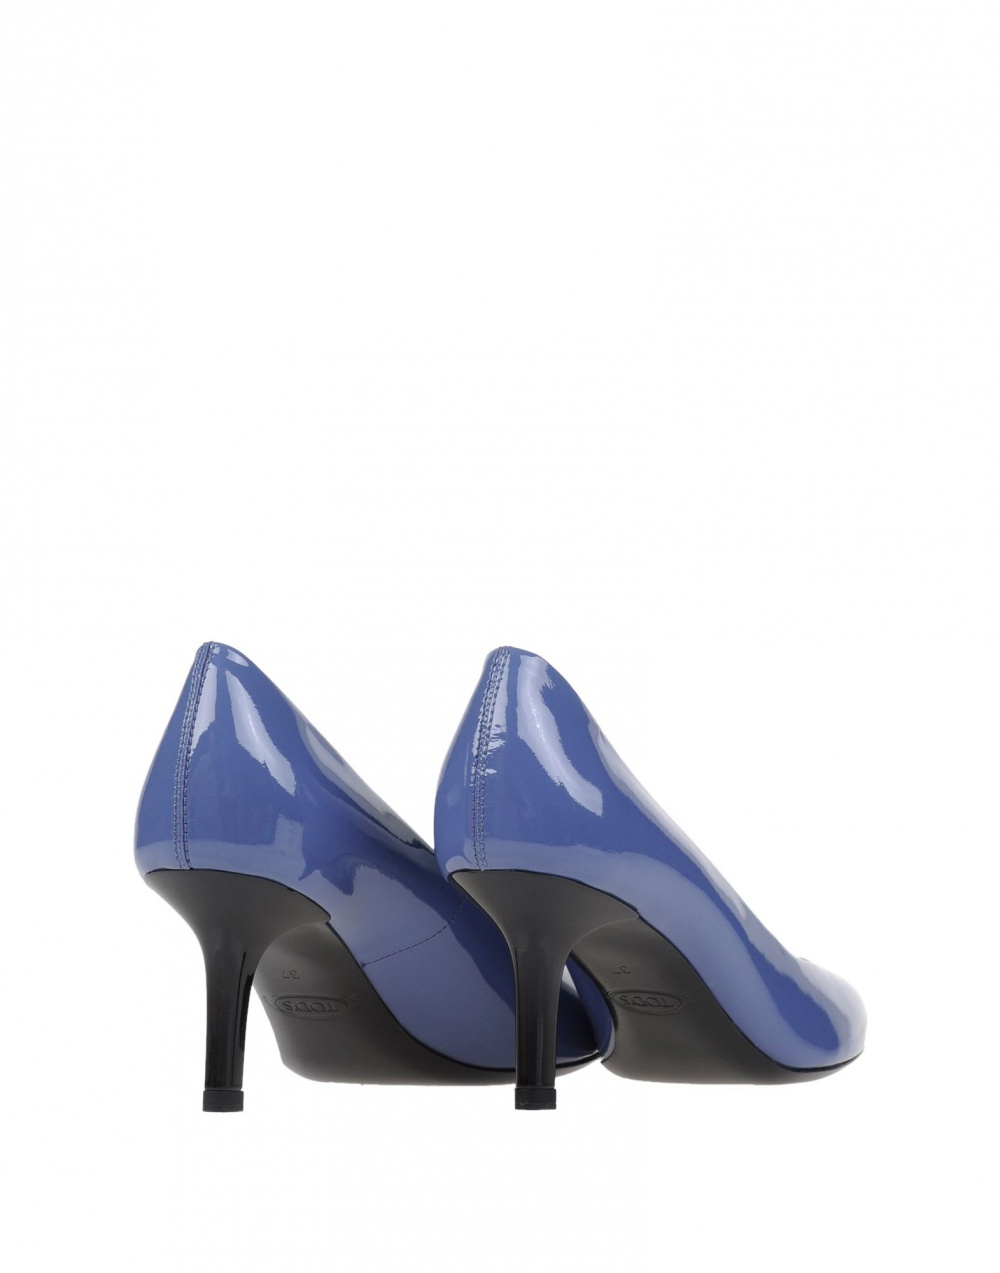 Лакированные туфли TOD'S, 37.5 (Европейский Размер), каблук 6,5 см.  Грифельно-синий